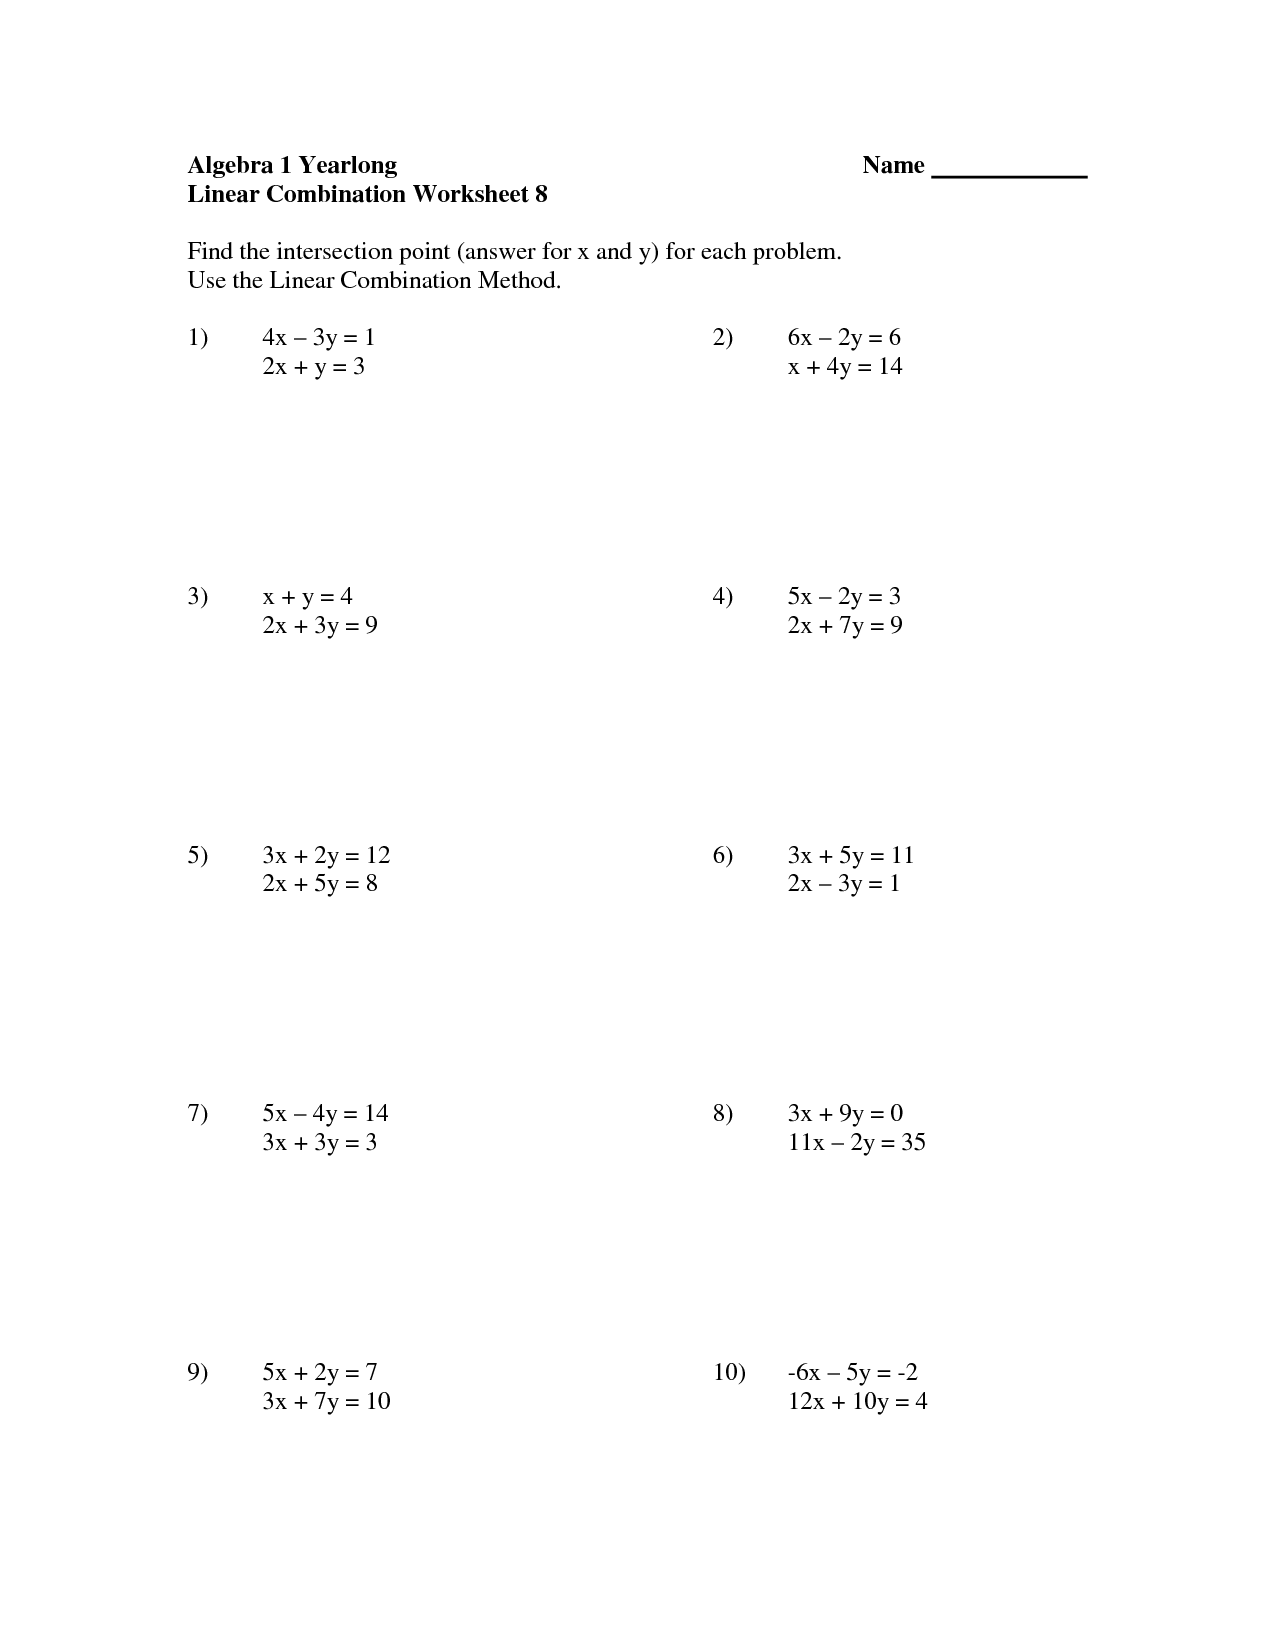 Algebra 1 Linear Equation Worksheets Image